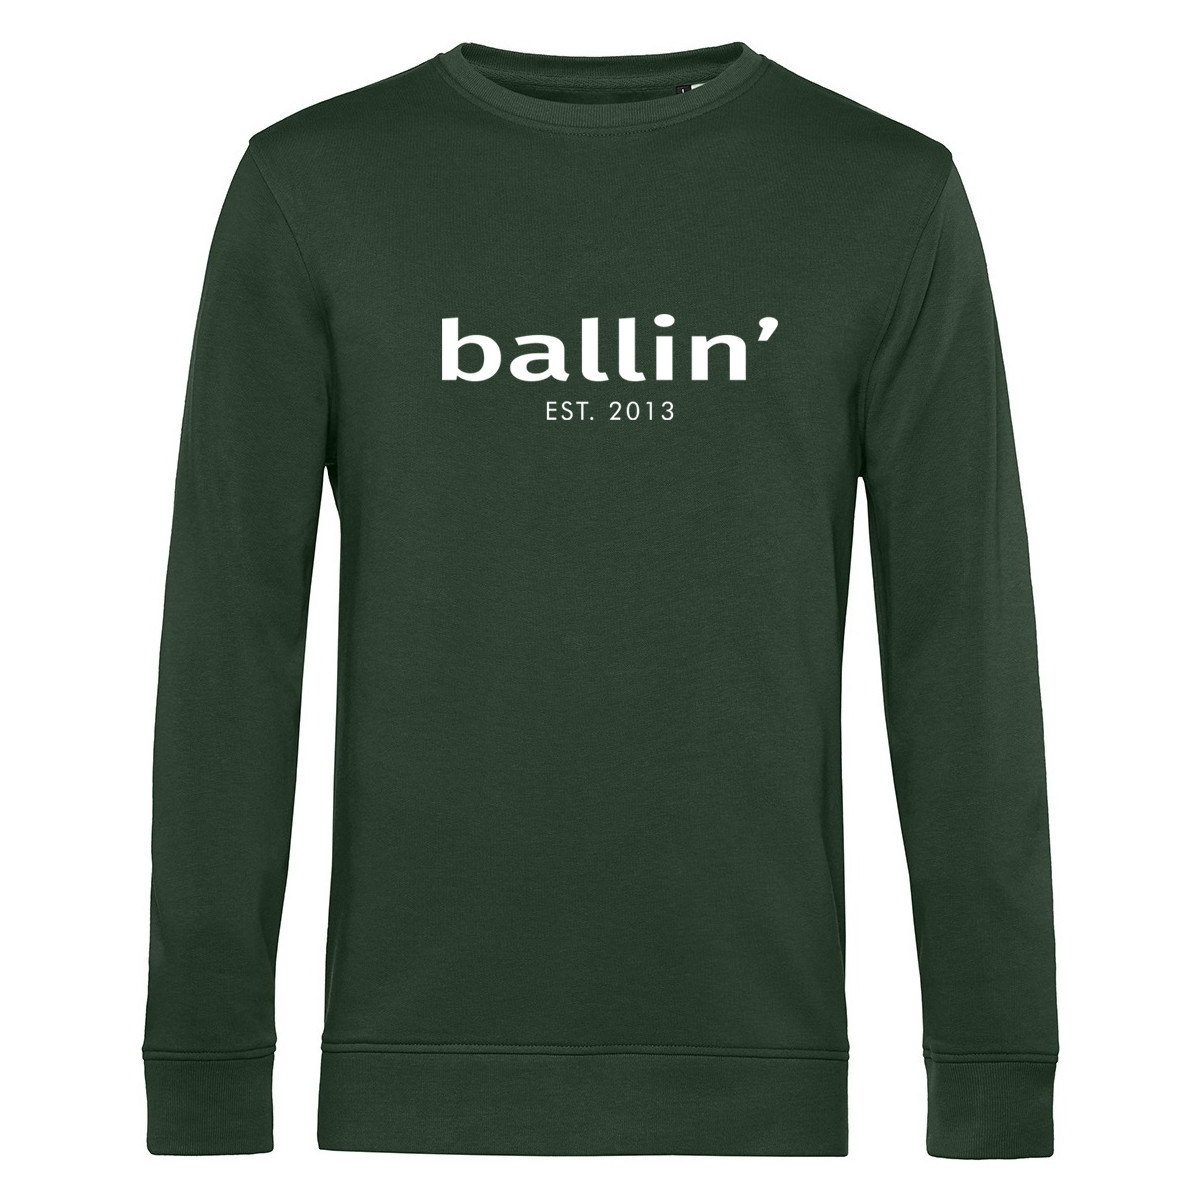 Kleidung Herren Sweatshirts Ballin Est. 2013 Basic Sweater Grün